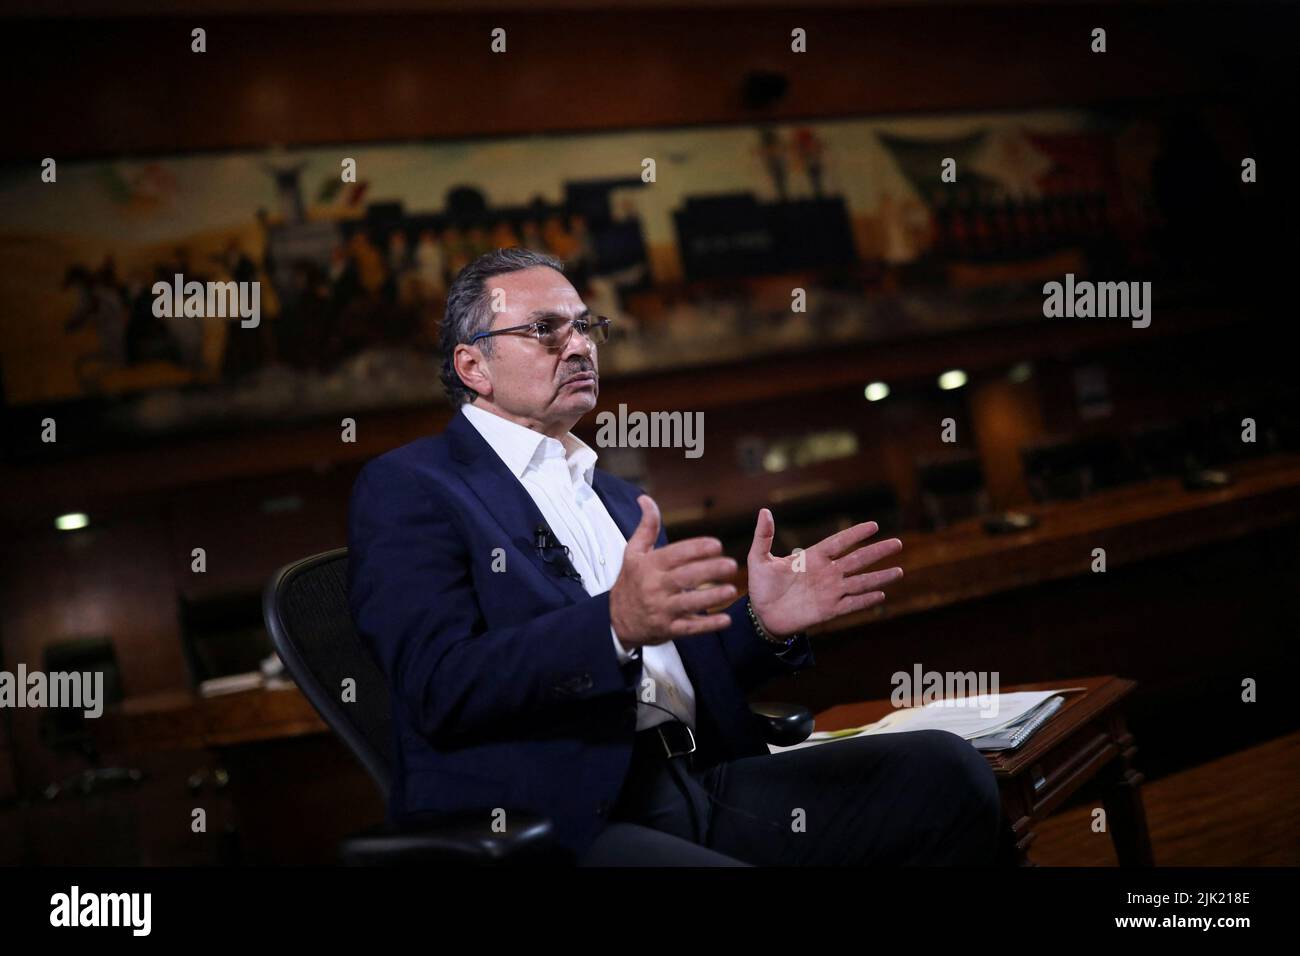 Octavio Romero, Director Ejecutivo de Pemex, Gestos durante una entrevista con Reuters en la sede de la petrolera estatal Pemex en Ciudad de México, México, 28 de julio de 2022. REUTERS/Edgard Garrido Foto de stock